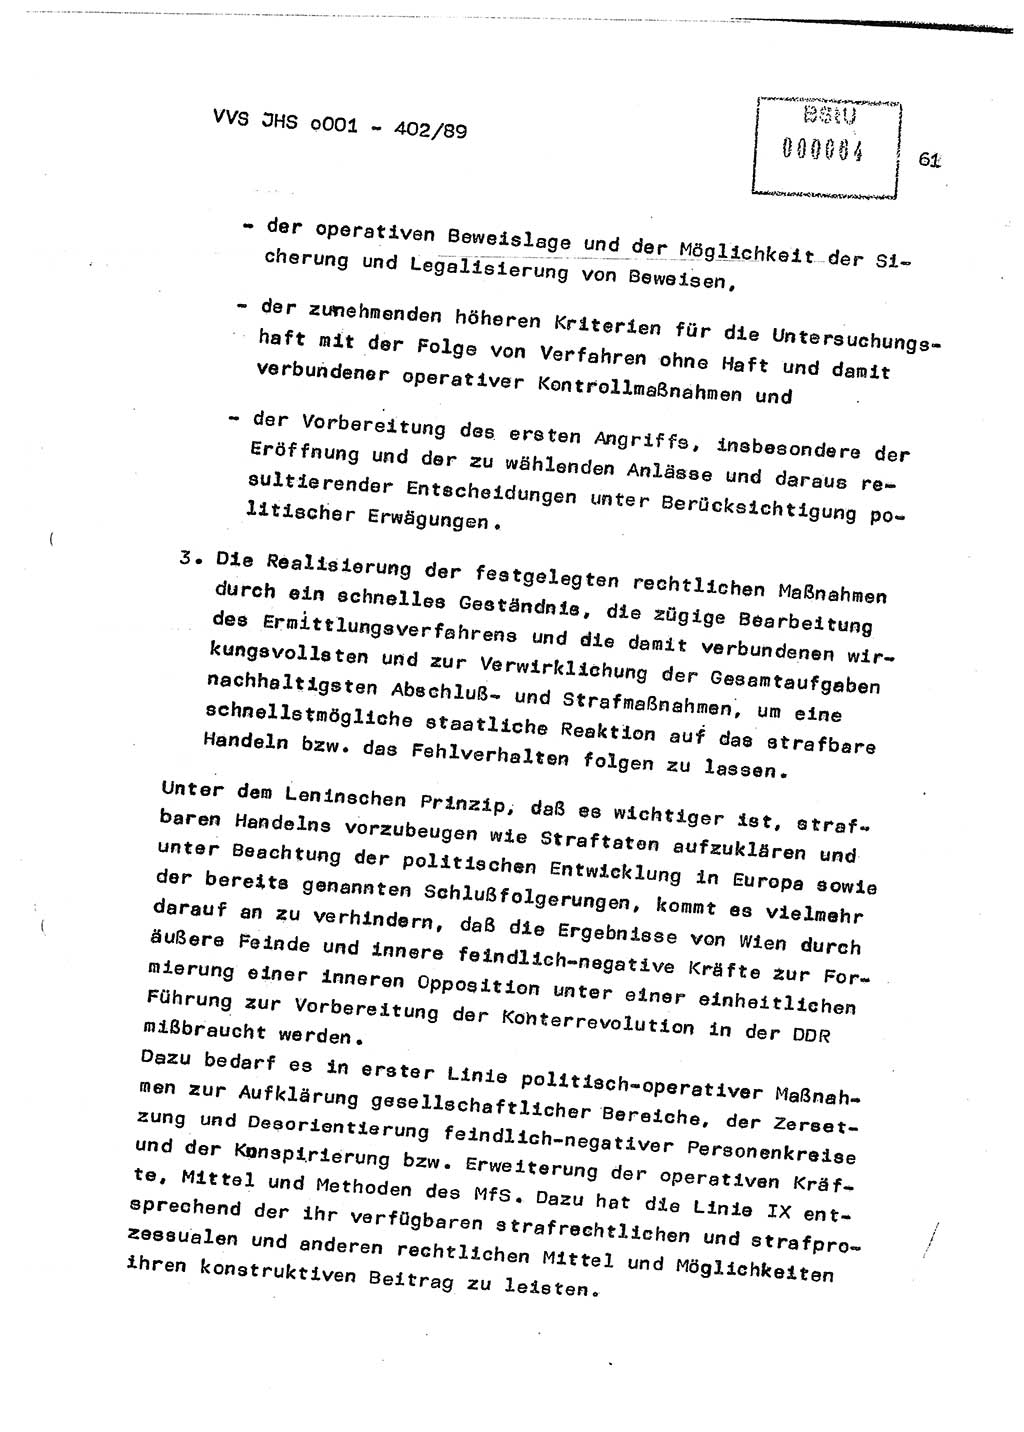 Diplomarbeit Major Günter Müller (HA Ⅸ/9), Ministerium für Staatssicherheit (MfS) [Deutsche Demokratische Republik (DDR)], Juristische Hochschule (JHS), Vertrauliche Verschlußsache (VVS) o001-402/89, Potsdam 1989, Seite 61 (Dipl.-Arb. MfS DDR JHS VVS o001-402/89 1989, S. 61)